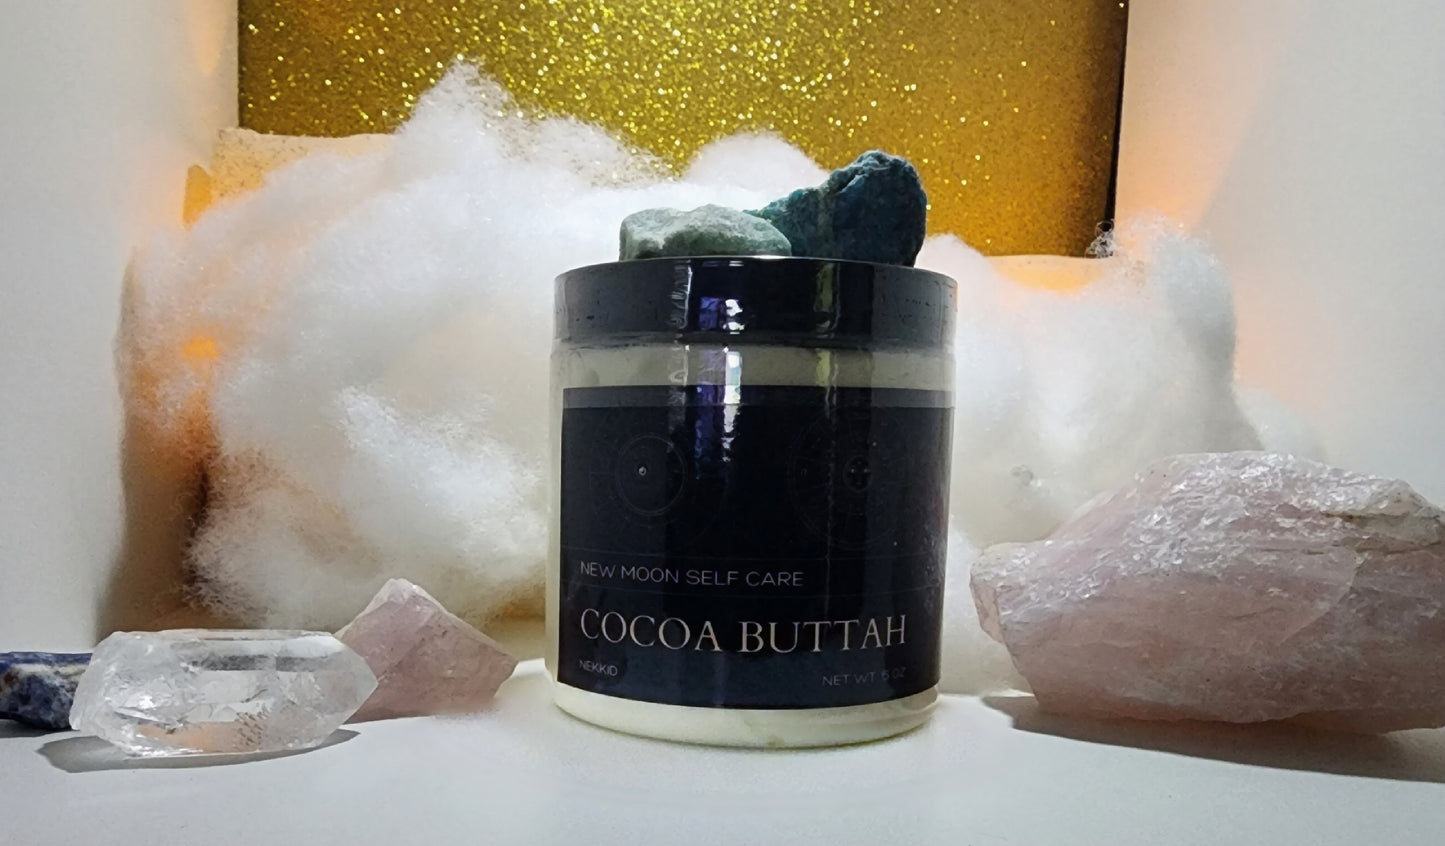 Cocoa Buttah